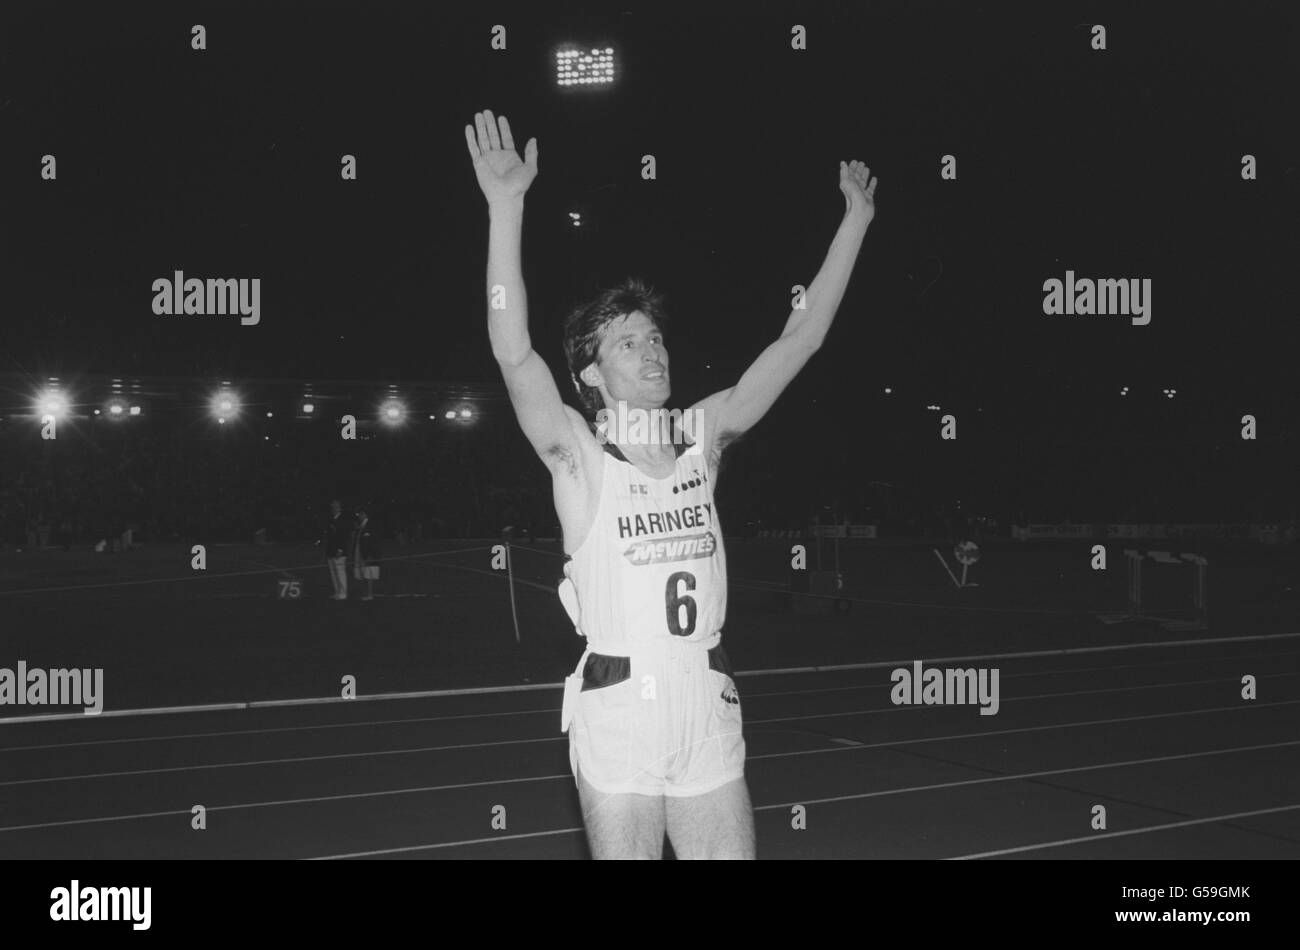 Sebastian Coe festeggia il suo trionfo dopo la vittoria nei 800 metri al meeting McVitie's Challenge Invitation, quando saluta l'atletica britannica al Crystal Palace di Londra. Foto Stock